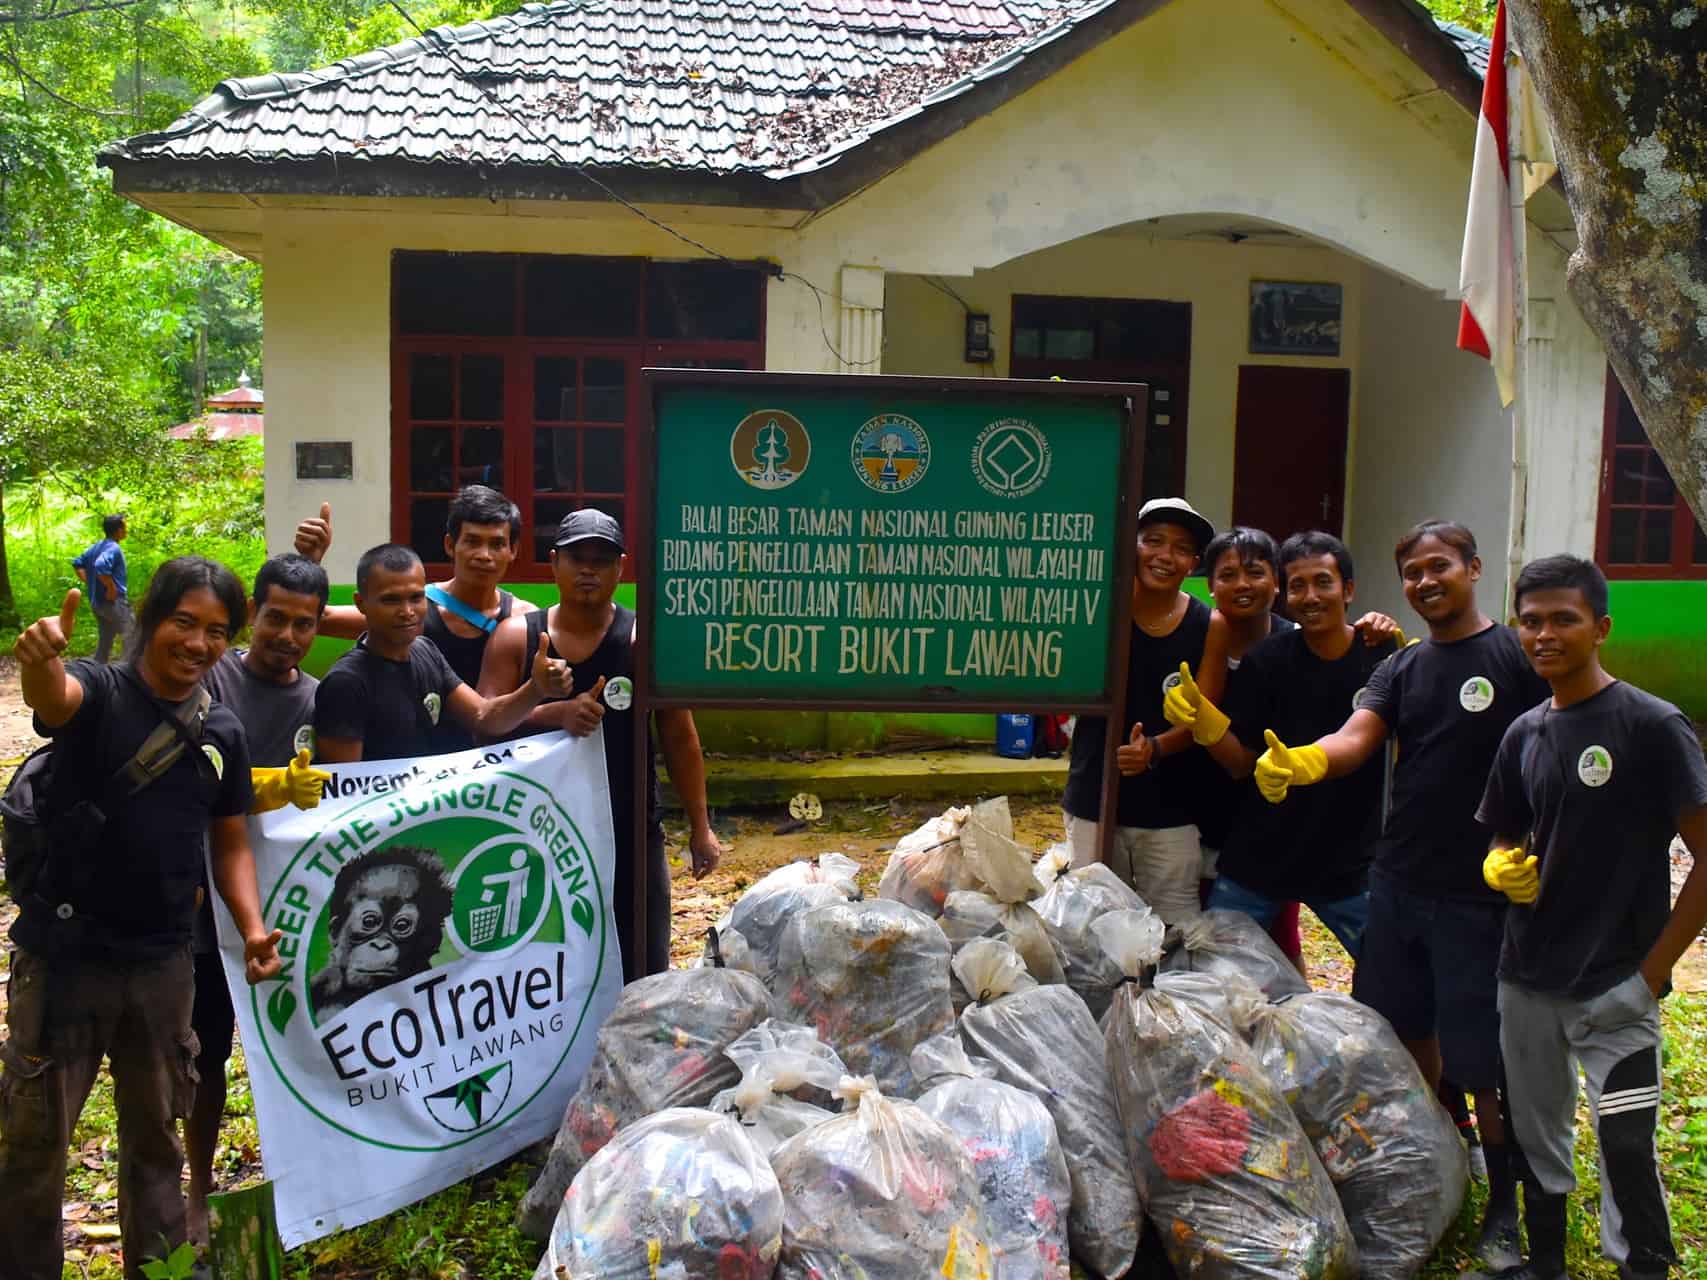 Keep The Jungle Green - Sumatra Eco Travel Bukit Lawang